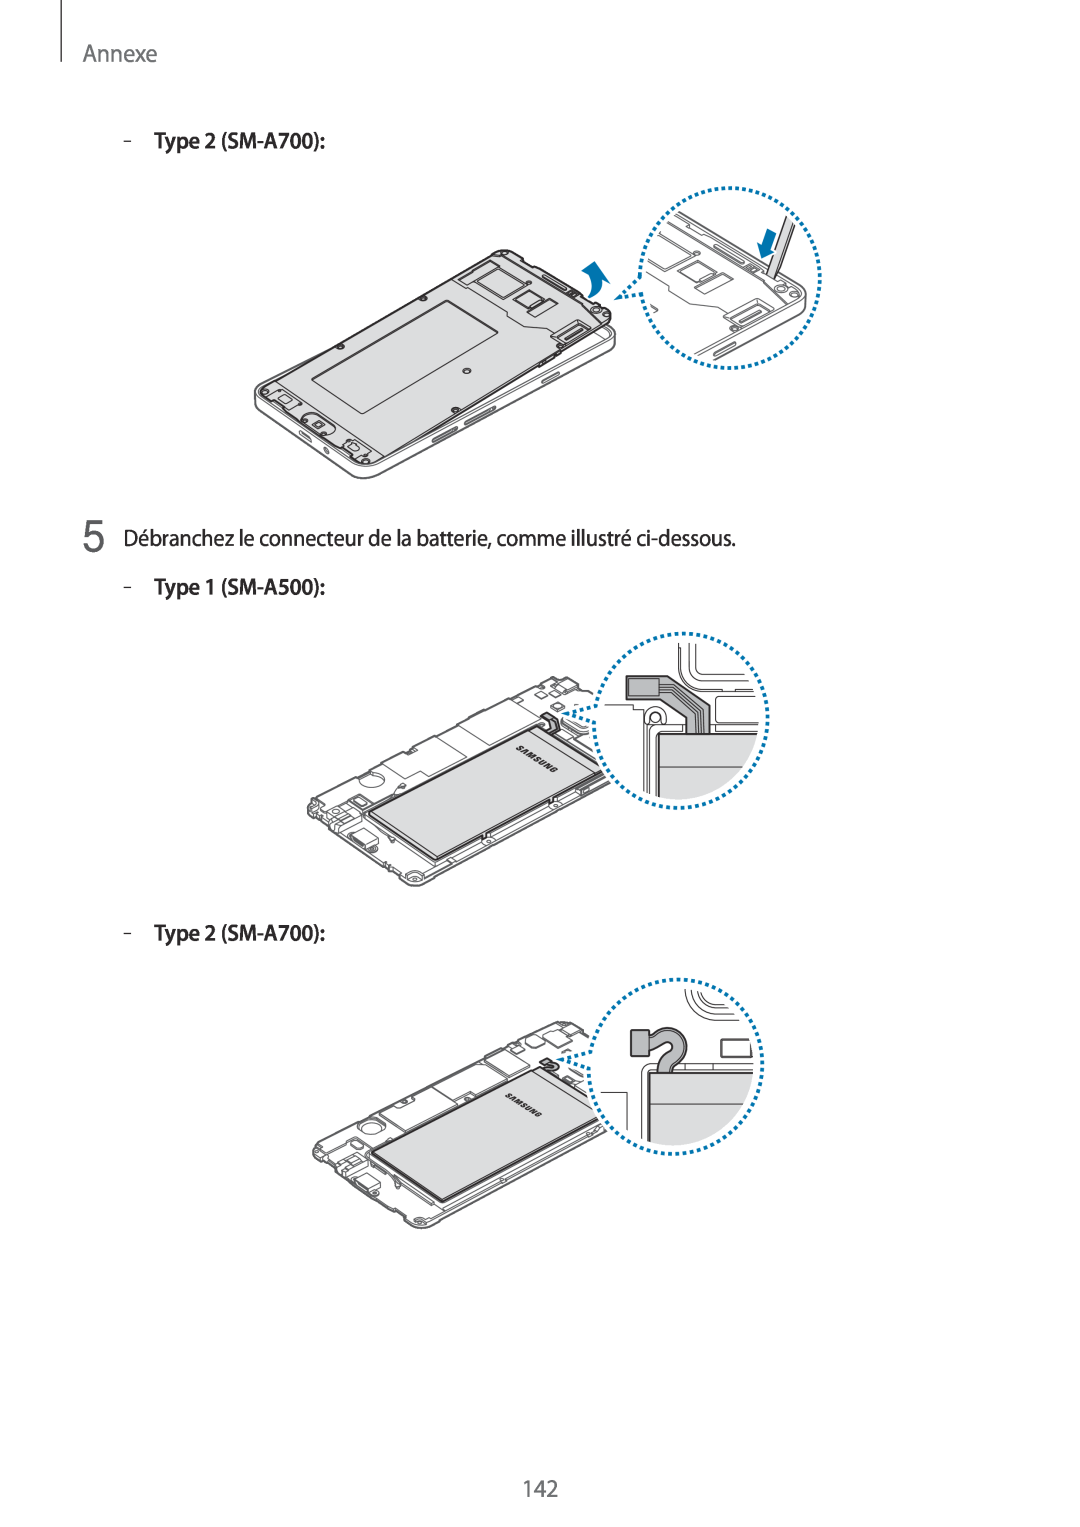 Samsung SM-A500FZKUXEF manual Type 2 SM-A700, Annexe, 5 Débranchez le connecteur de la batterie, comme illustré ci-dessous 